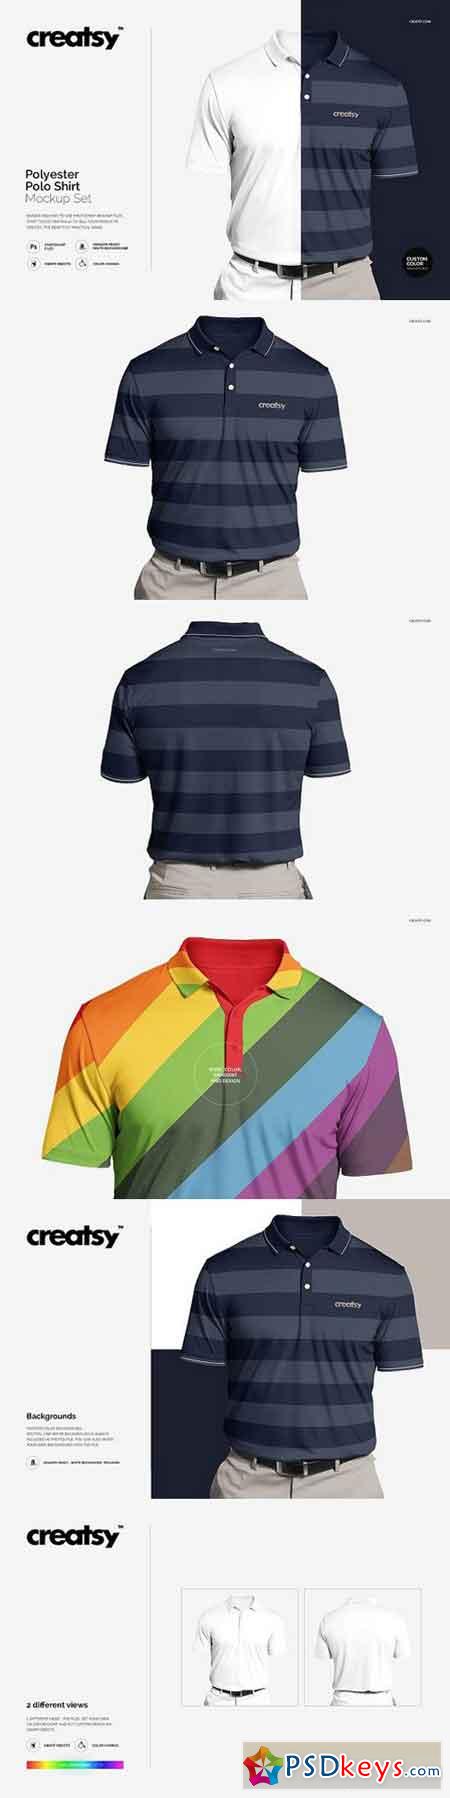 Polyester Polo Shirt Mockup Set 1447912